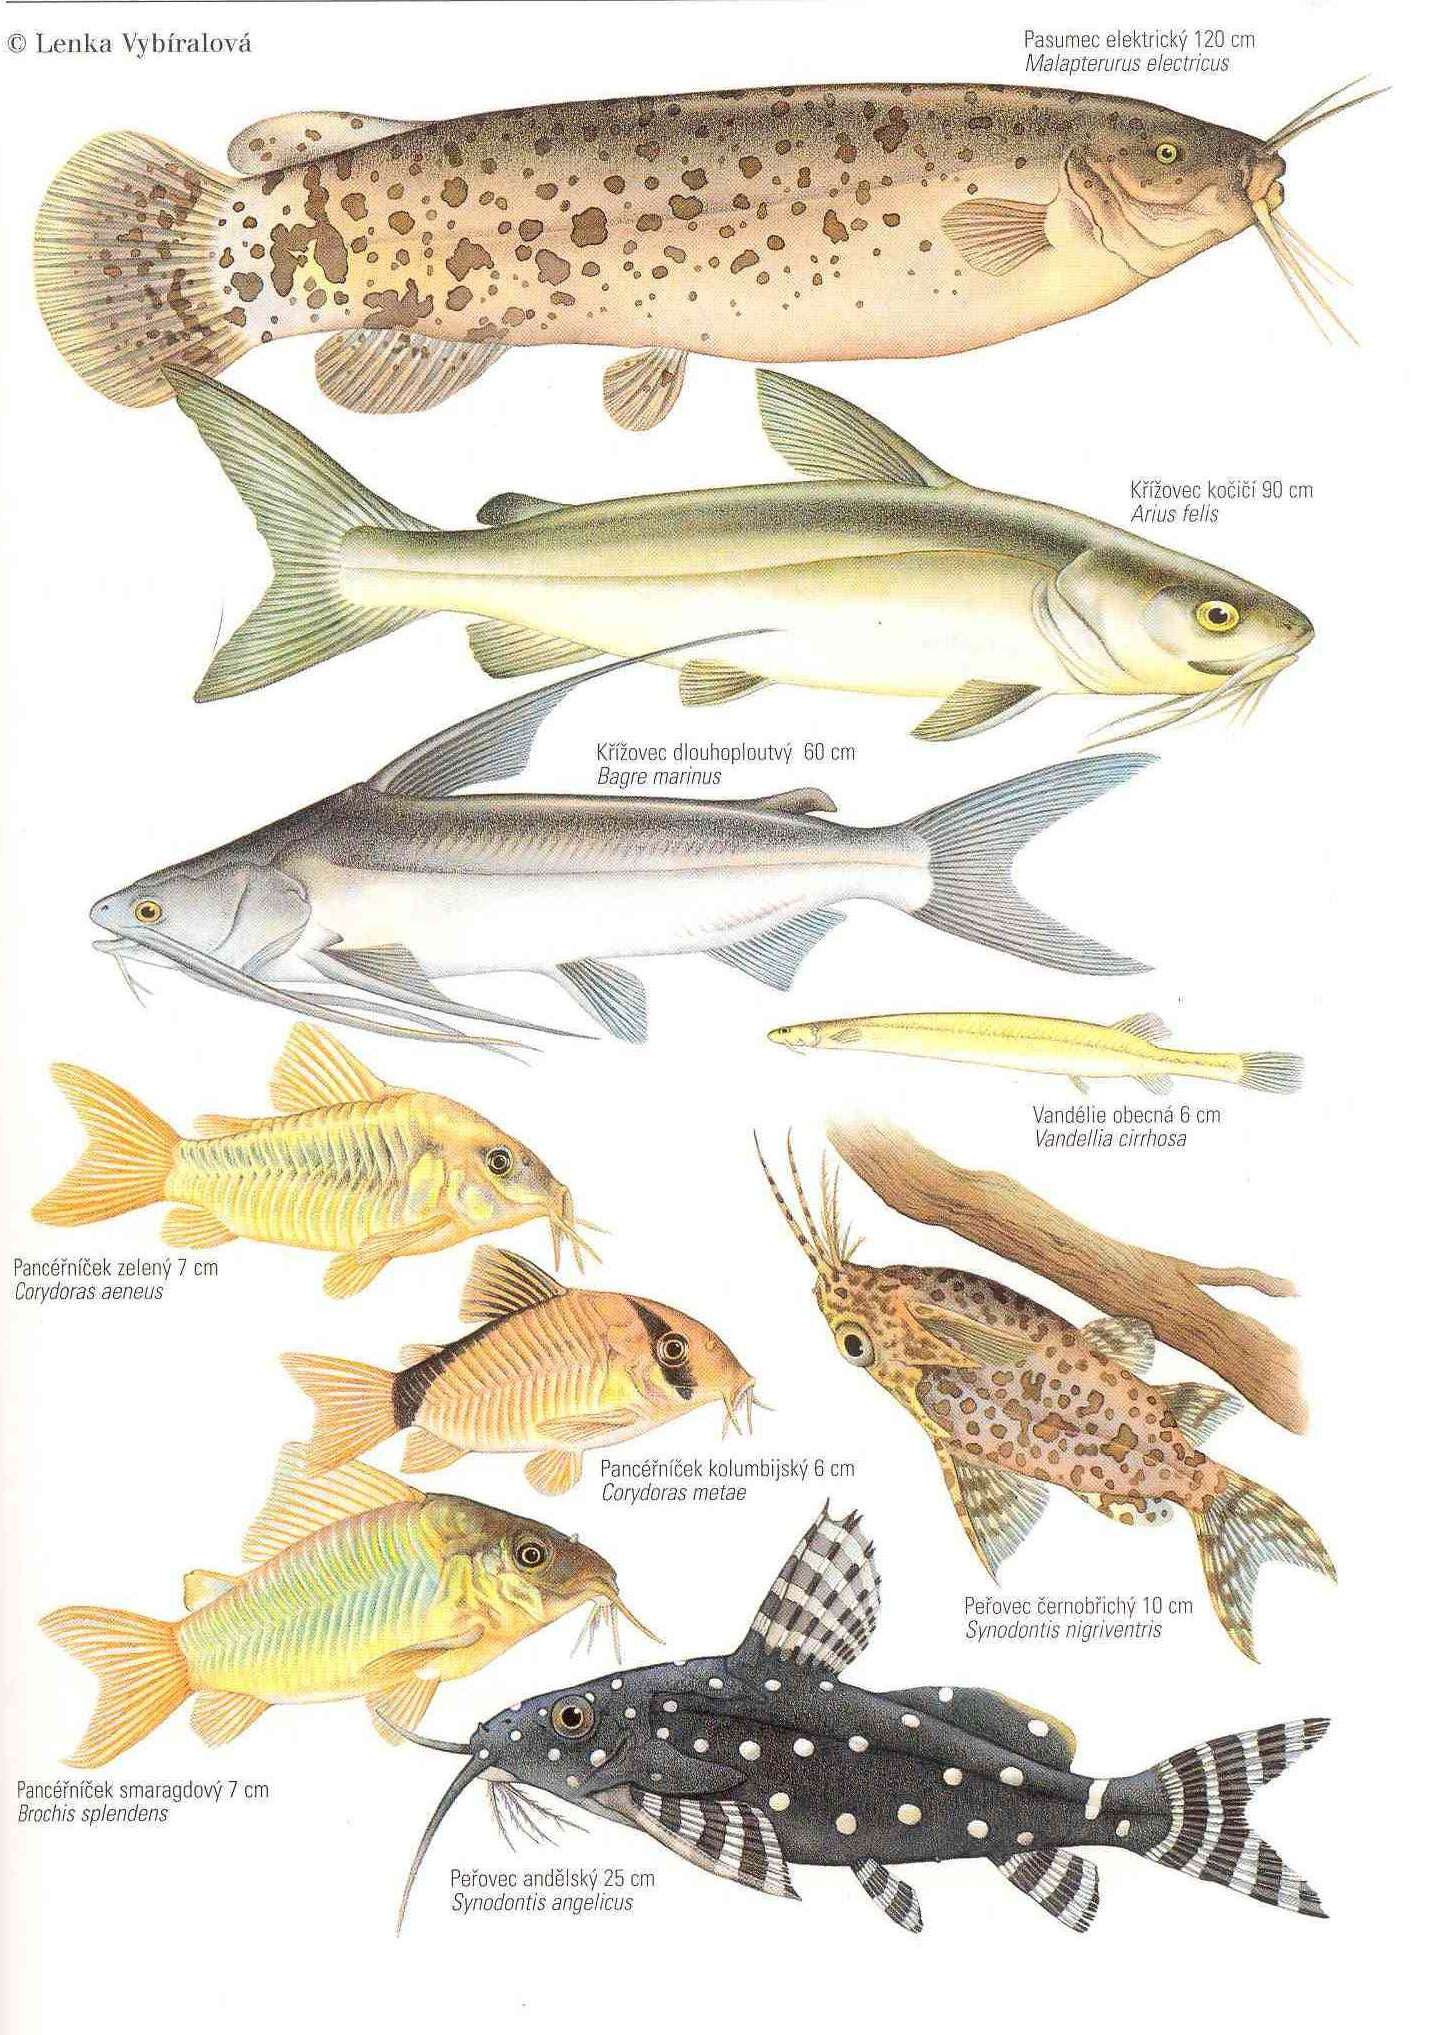 Řád: SUMCI Siluriformes tvarově vyhraněná sladkovodní skupina s různými adaptacemi (keříčkovité výrůstky ţaberní sliznice, dýchací vak ţaberní dutiny, krní oči, přísavky v proudech, elektrické